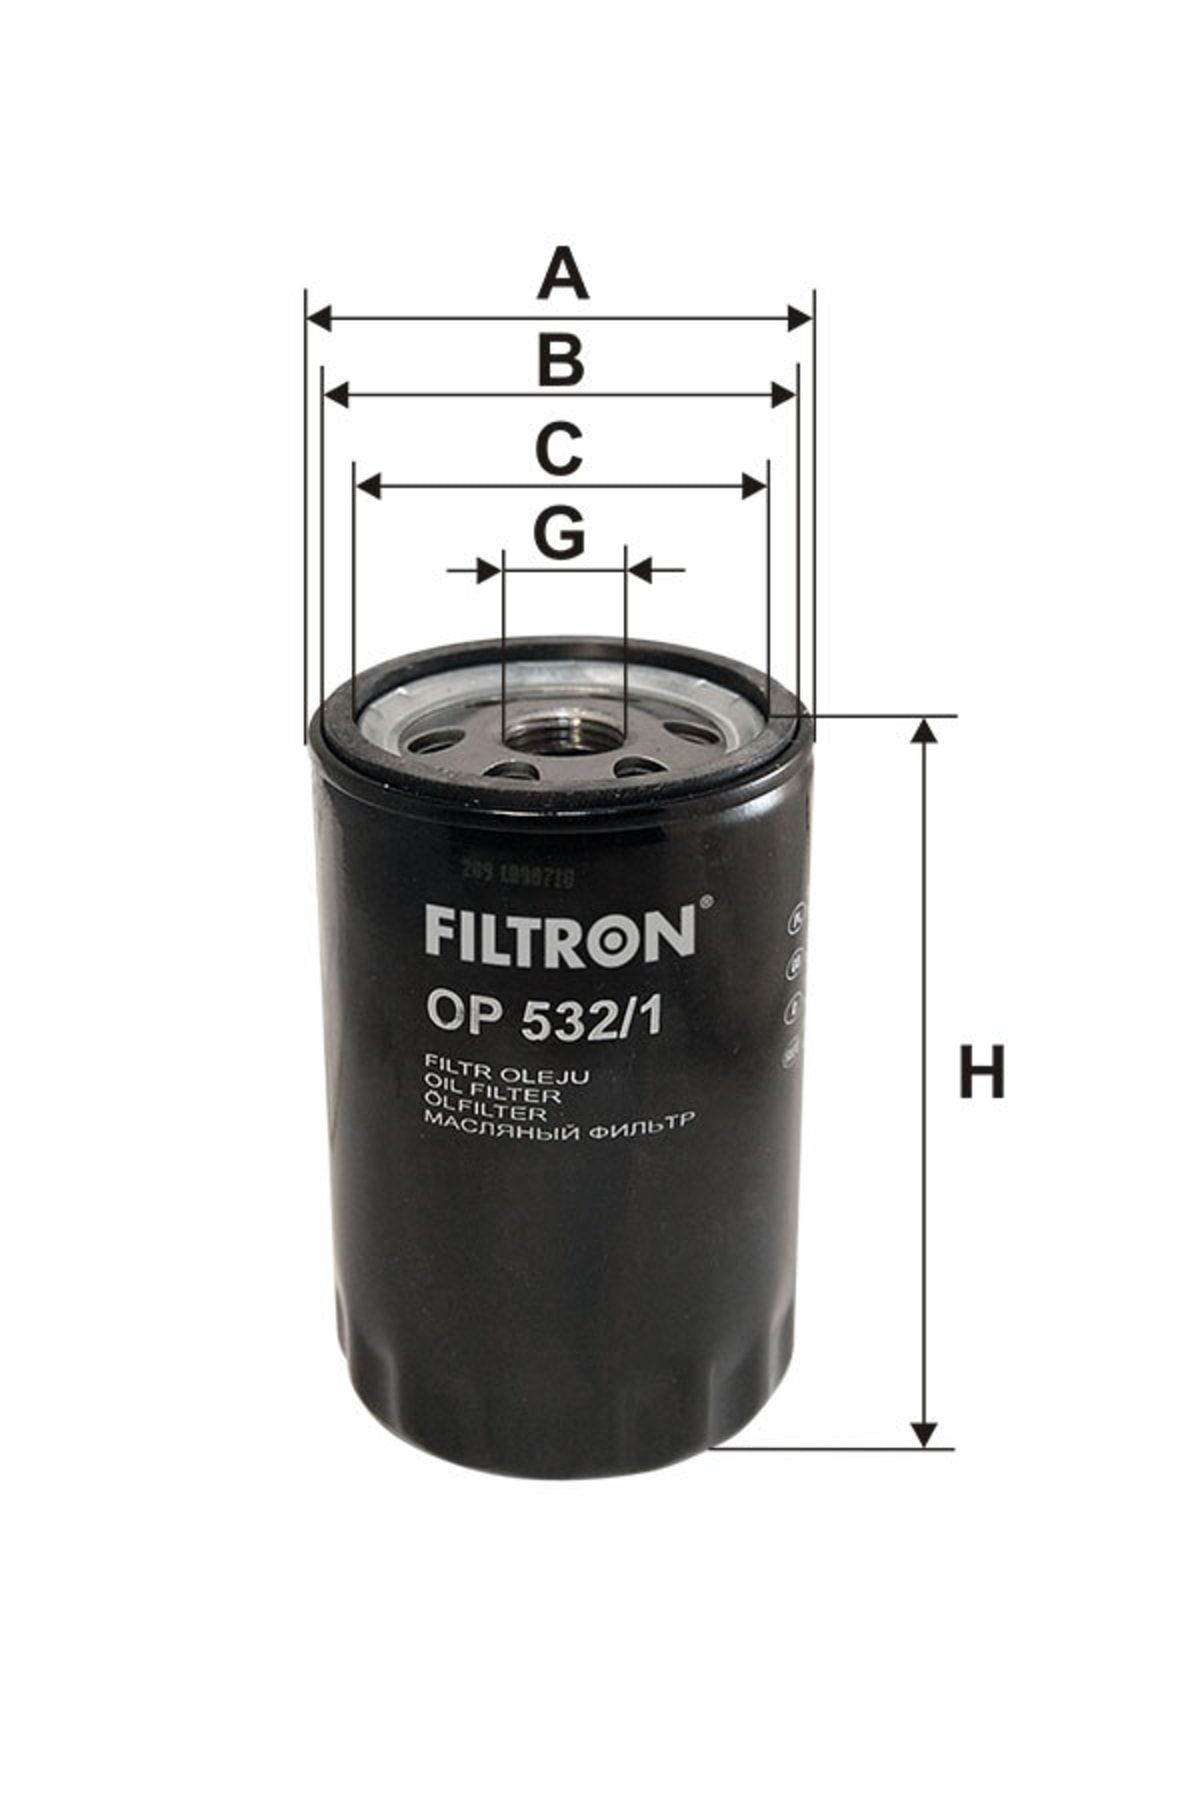 Filtron Op 532/1 Yag Fıltresı Escort 98>00 Mondeo I / Iı 92>00 Focus I 98>05 1,6 / 1,8 / 2,0 Fıesta Iıı / Iv